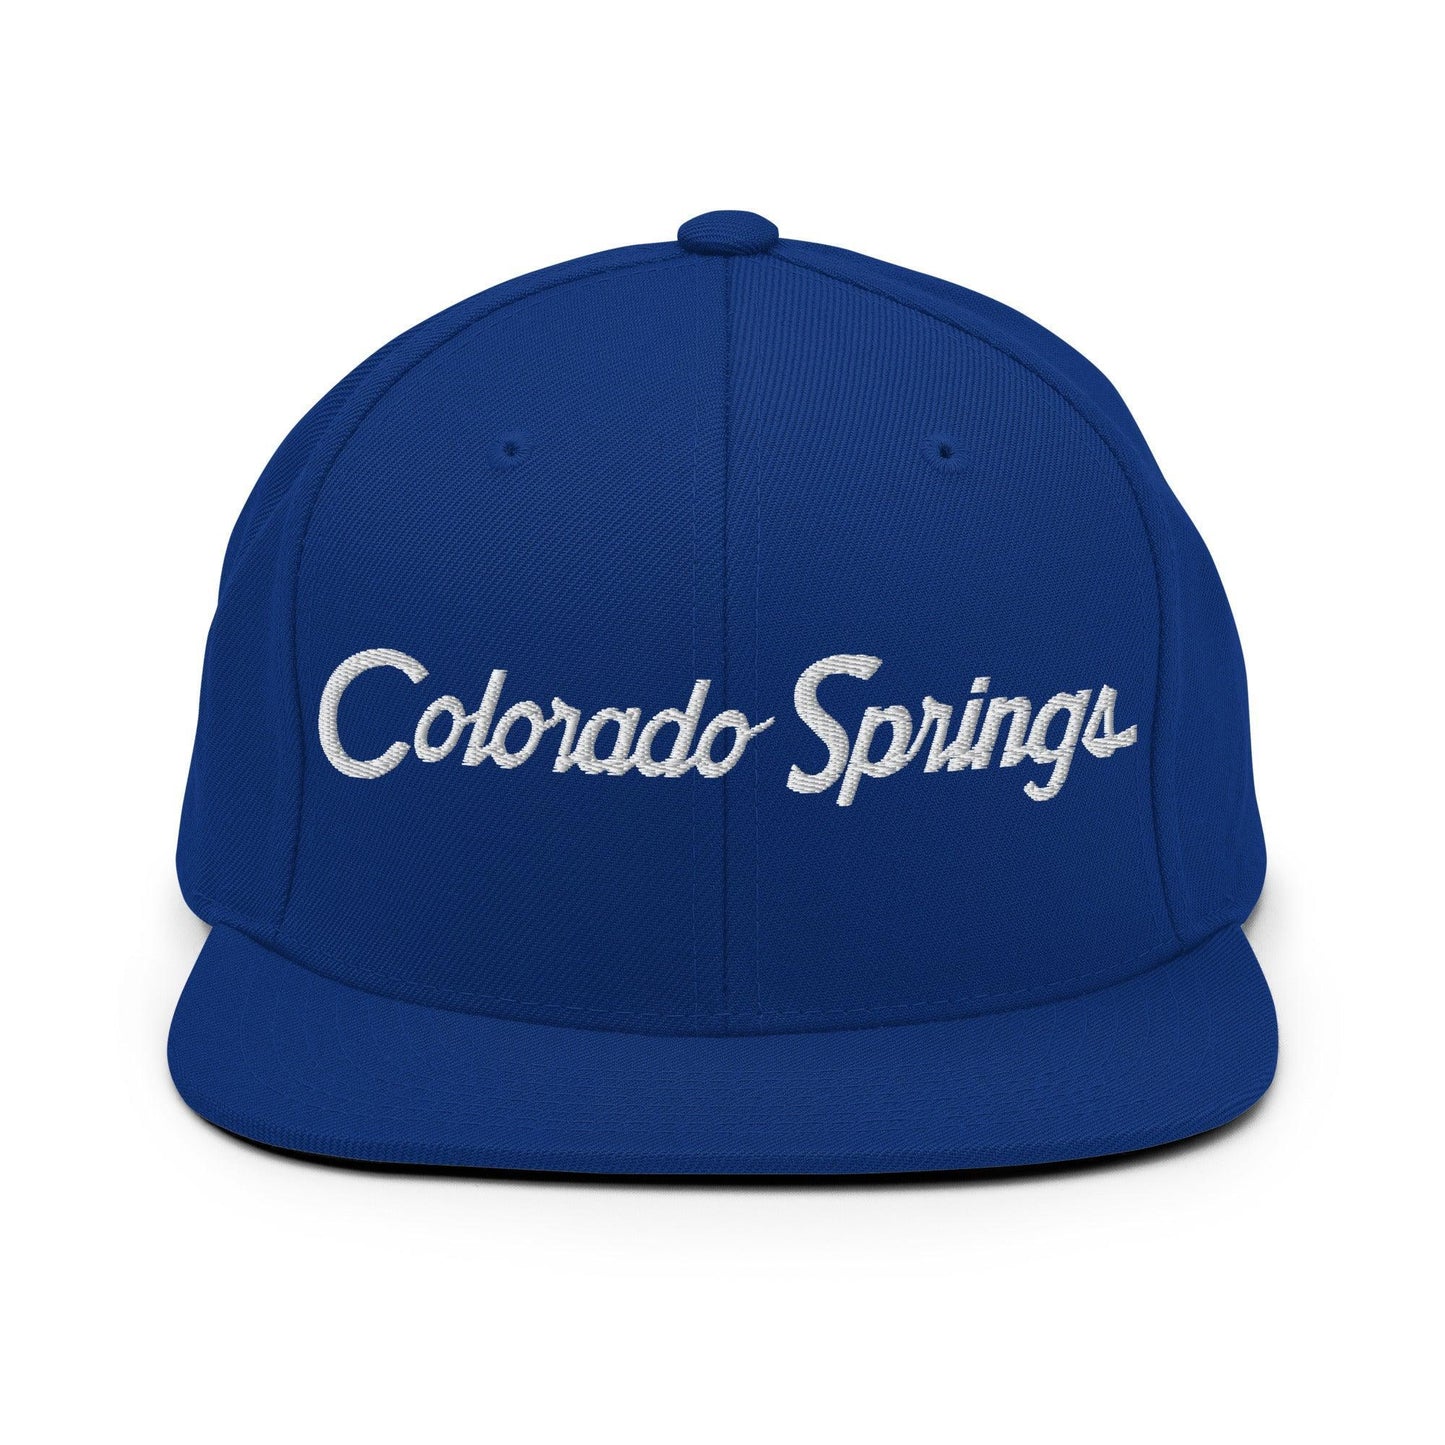 Colorado Springs Script Snapback Hat Royal Blue